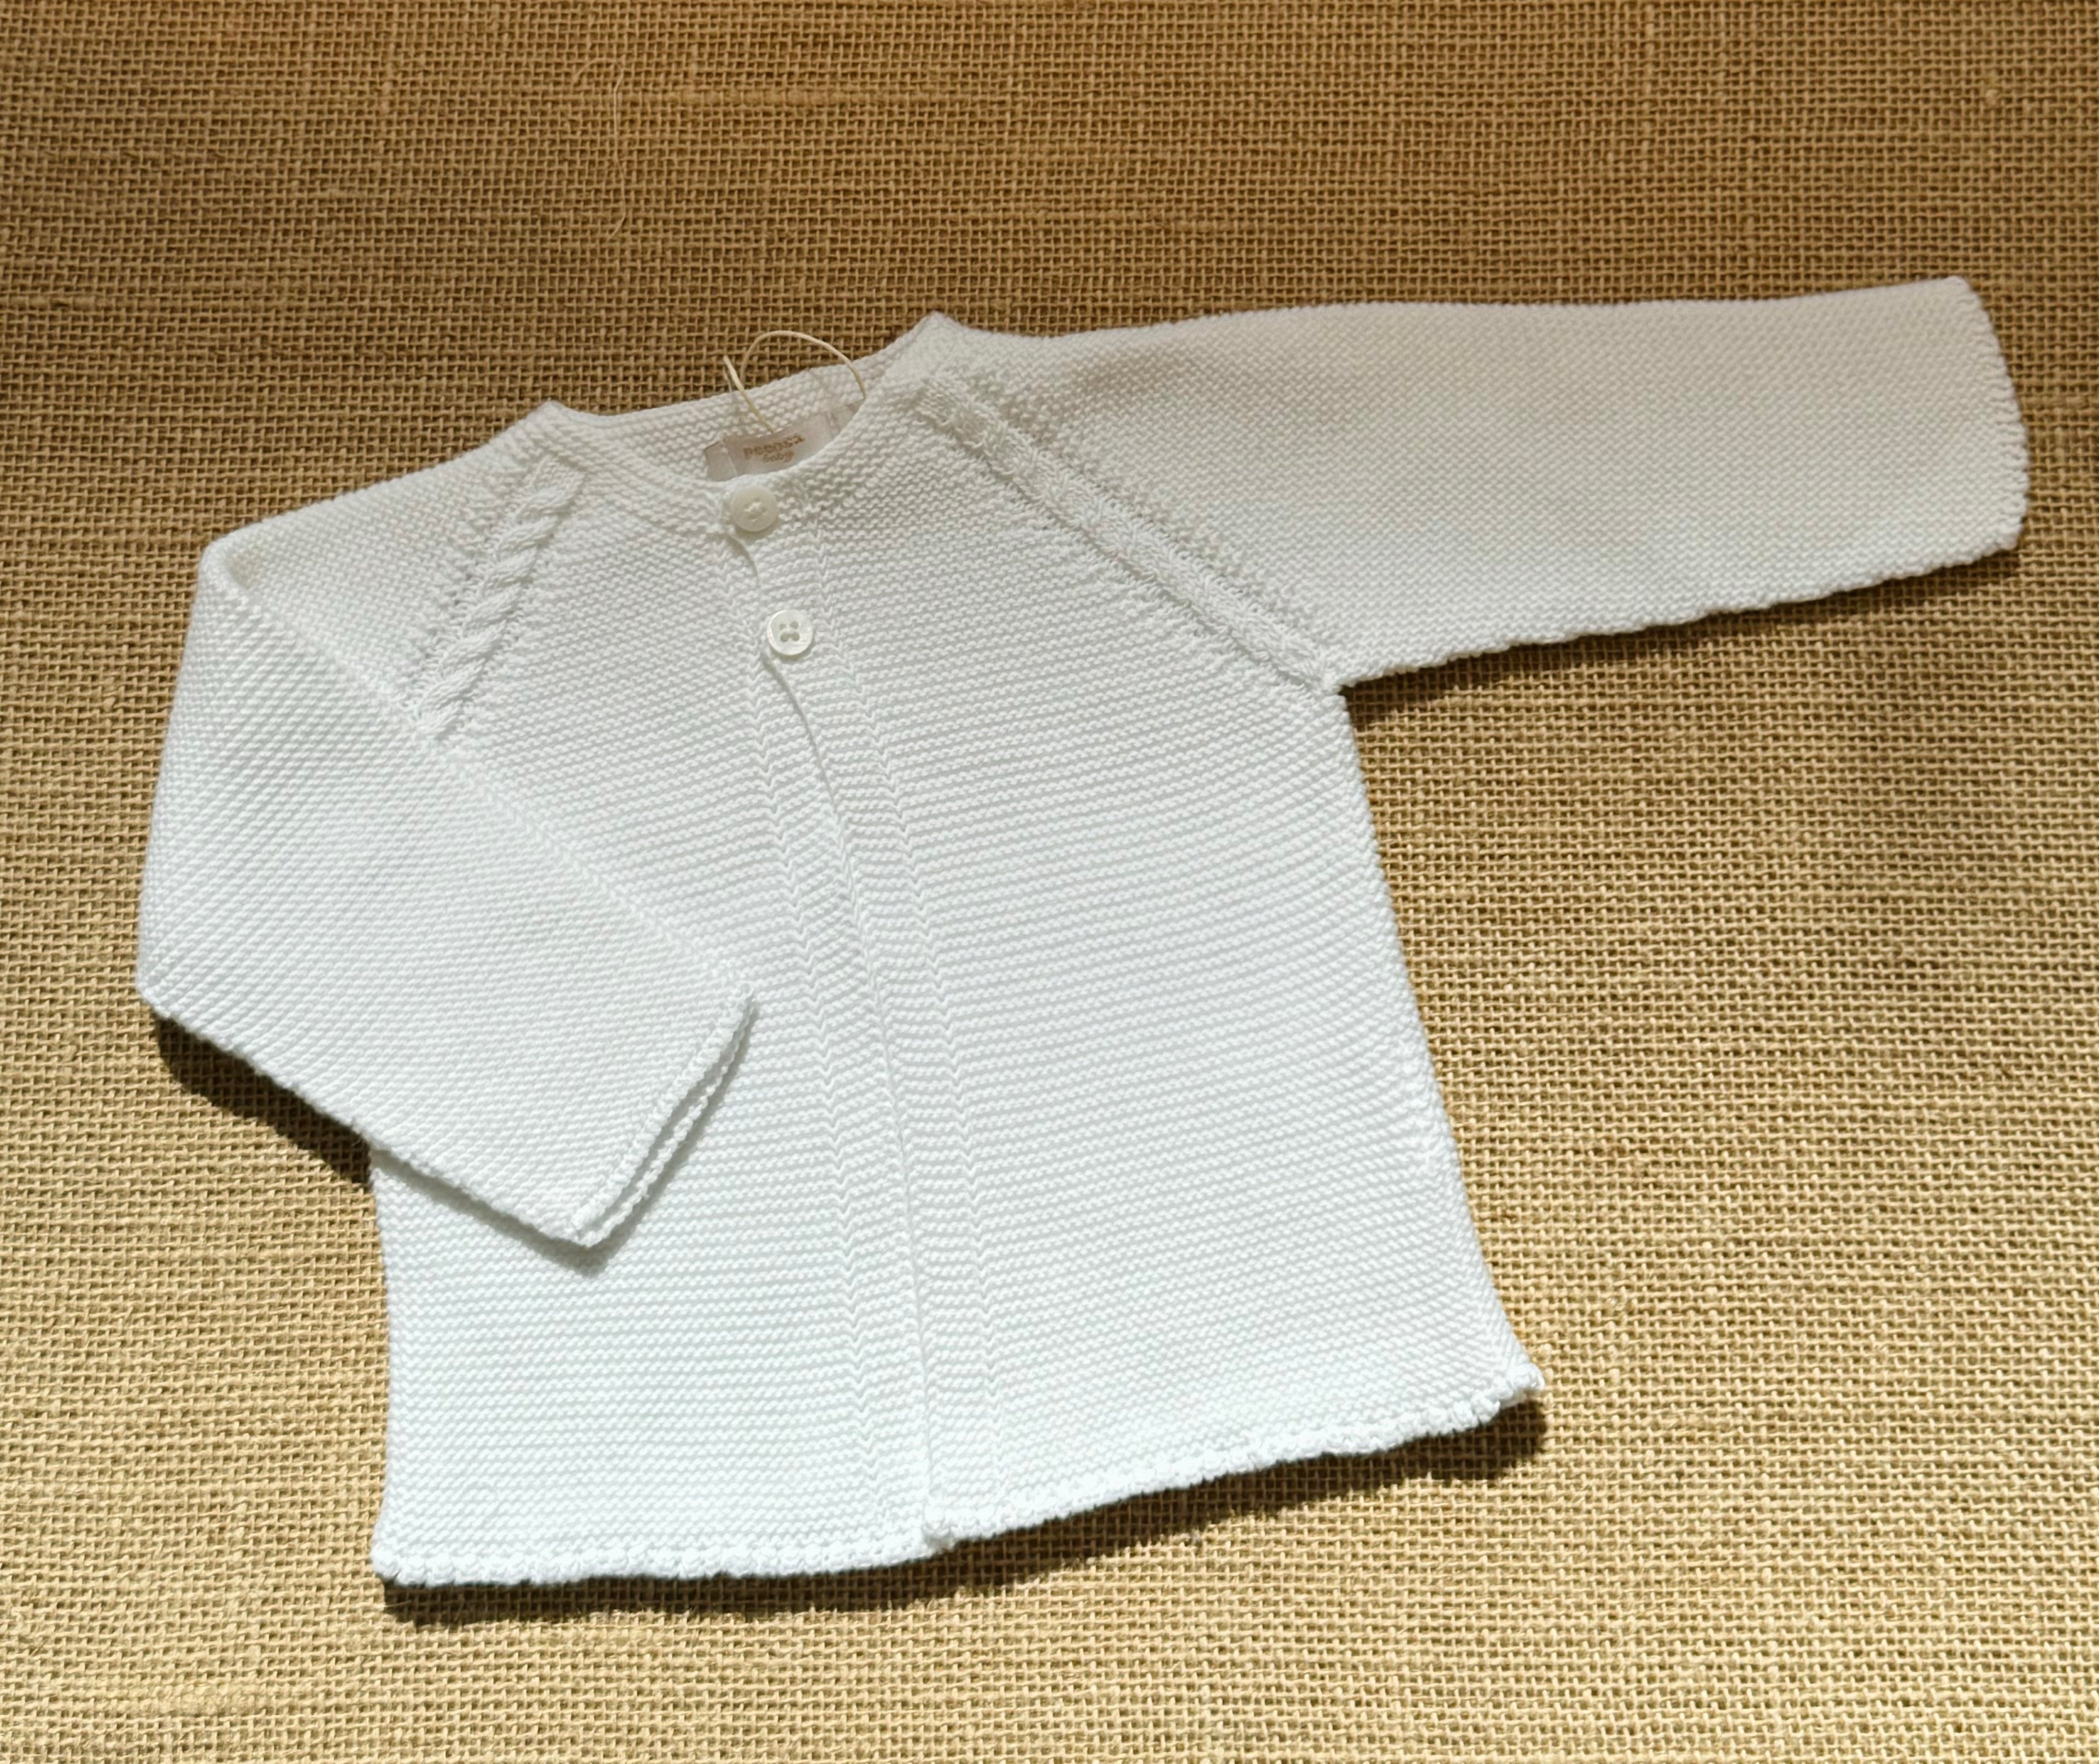 Chaqueta punto algodón en color blanco